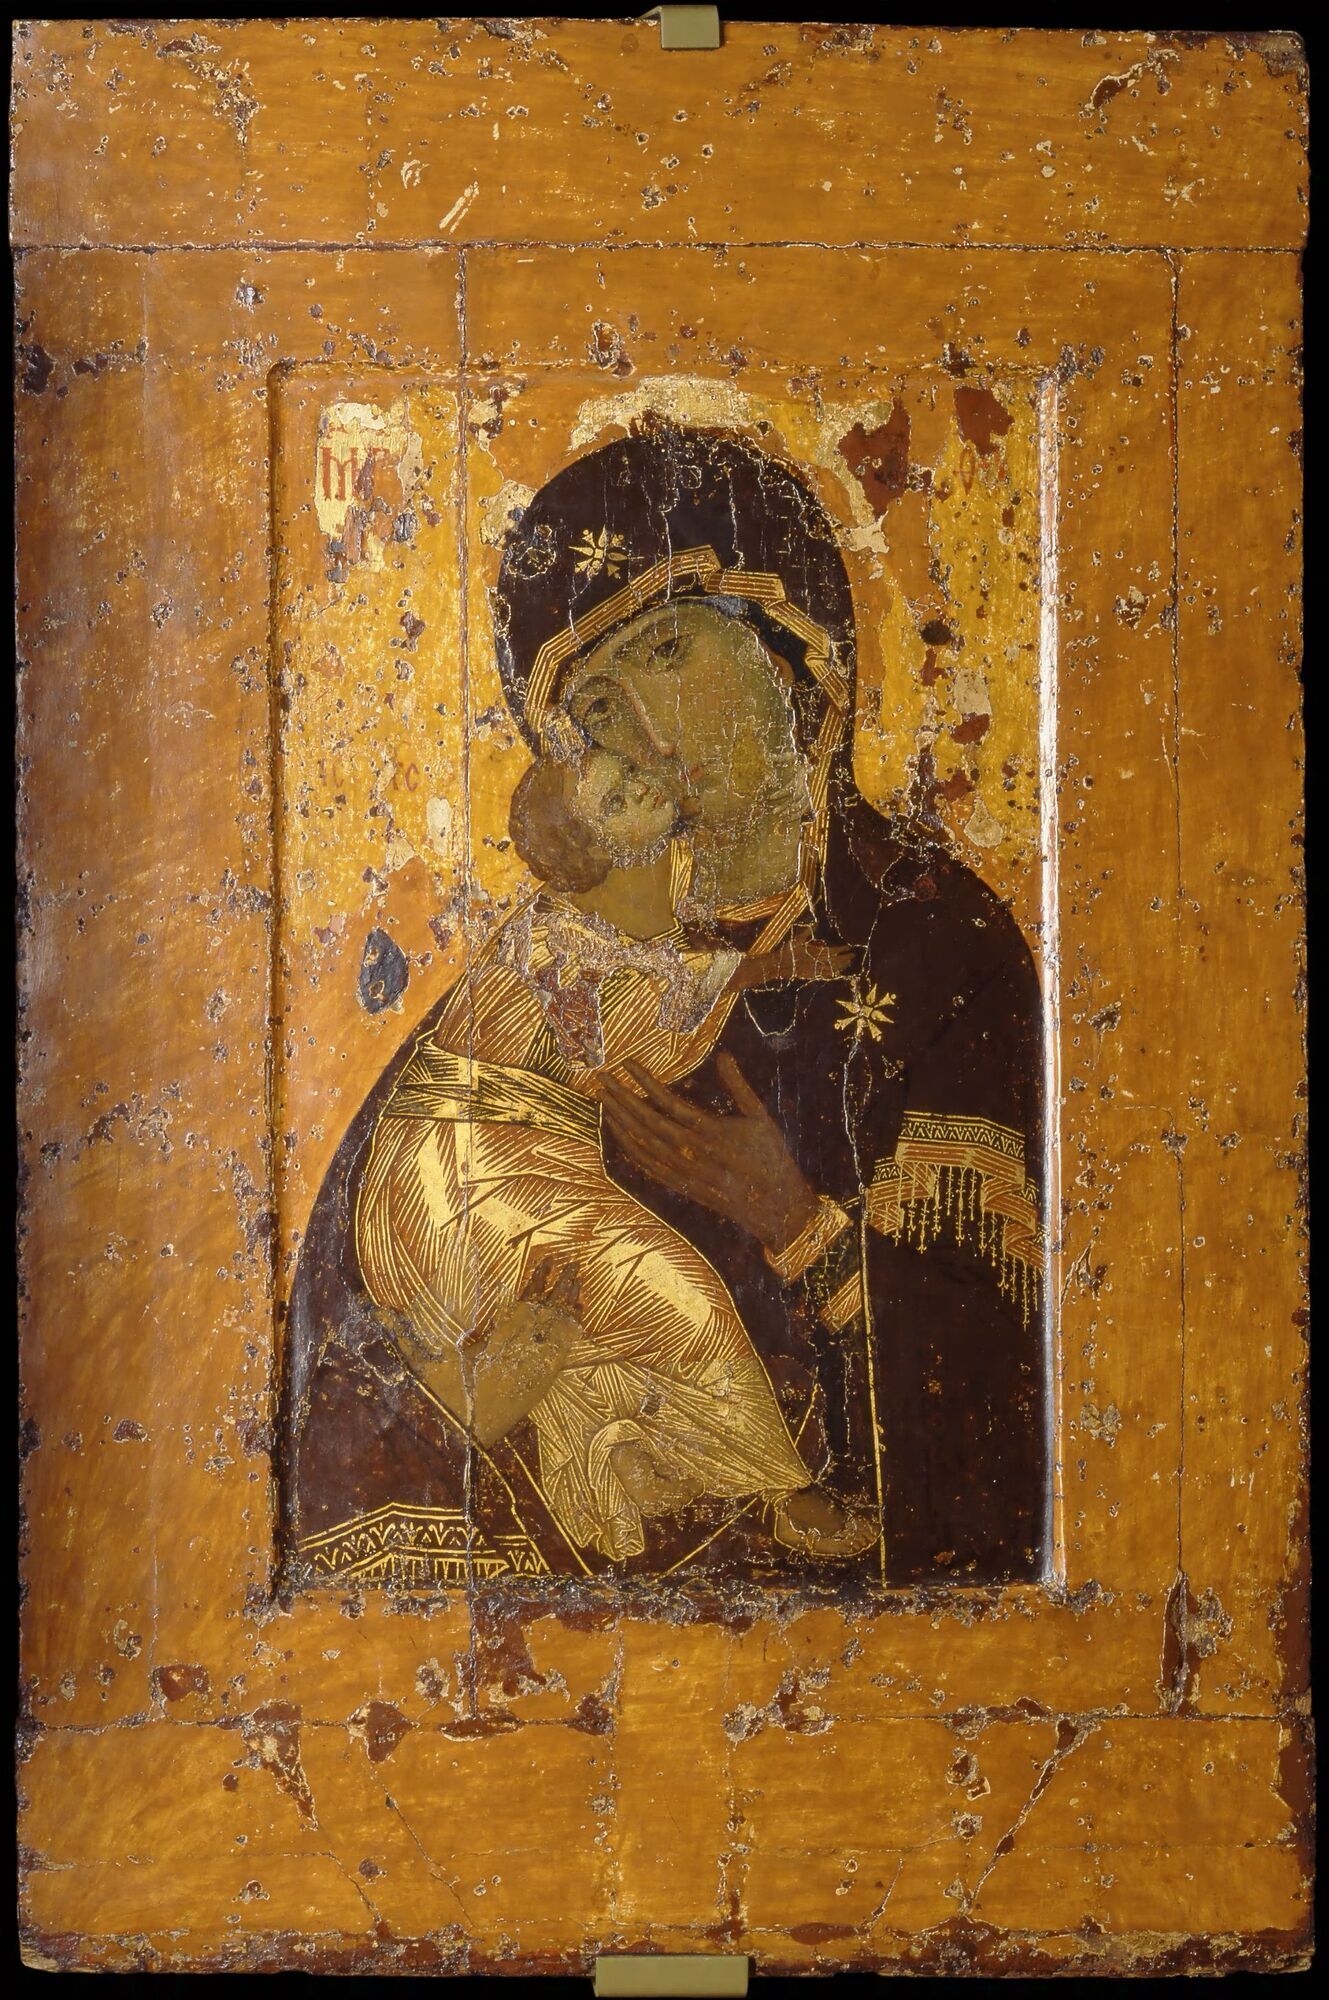 Володимирська ікона Божої Матері. Третьяковська галерея